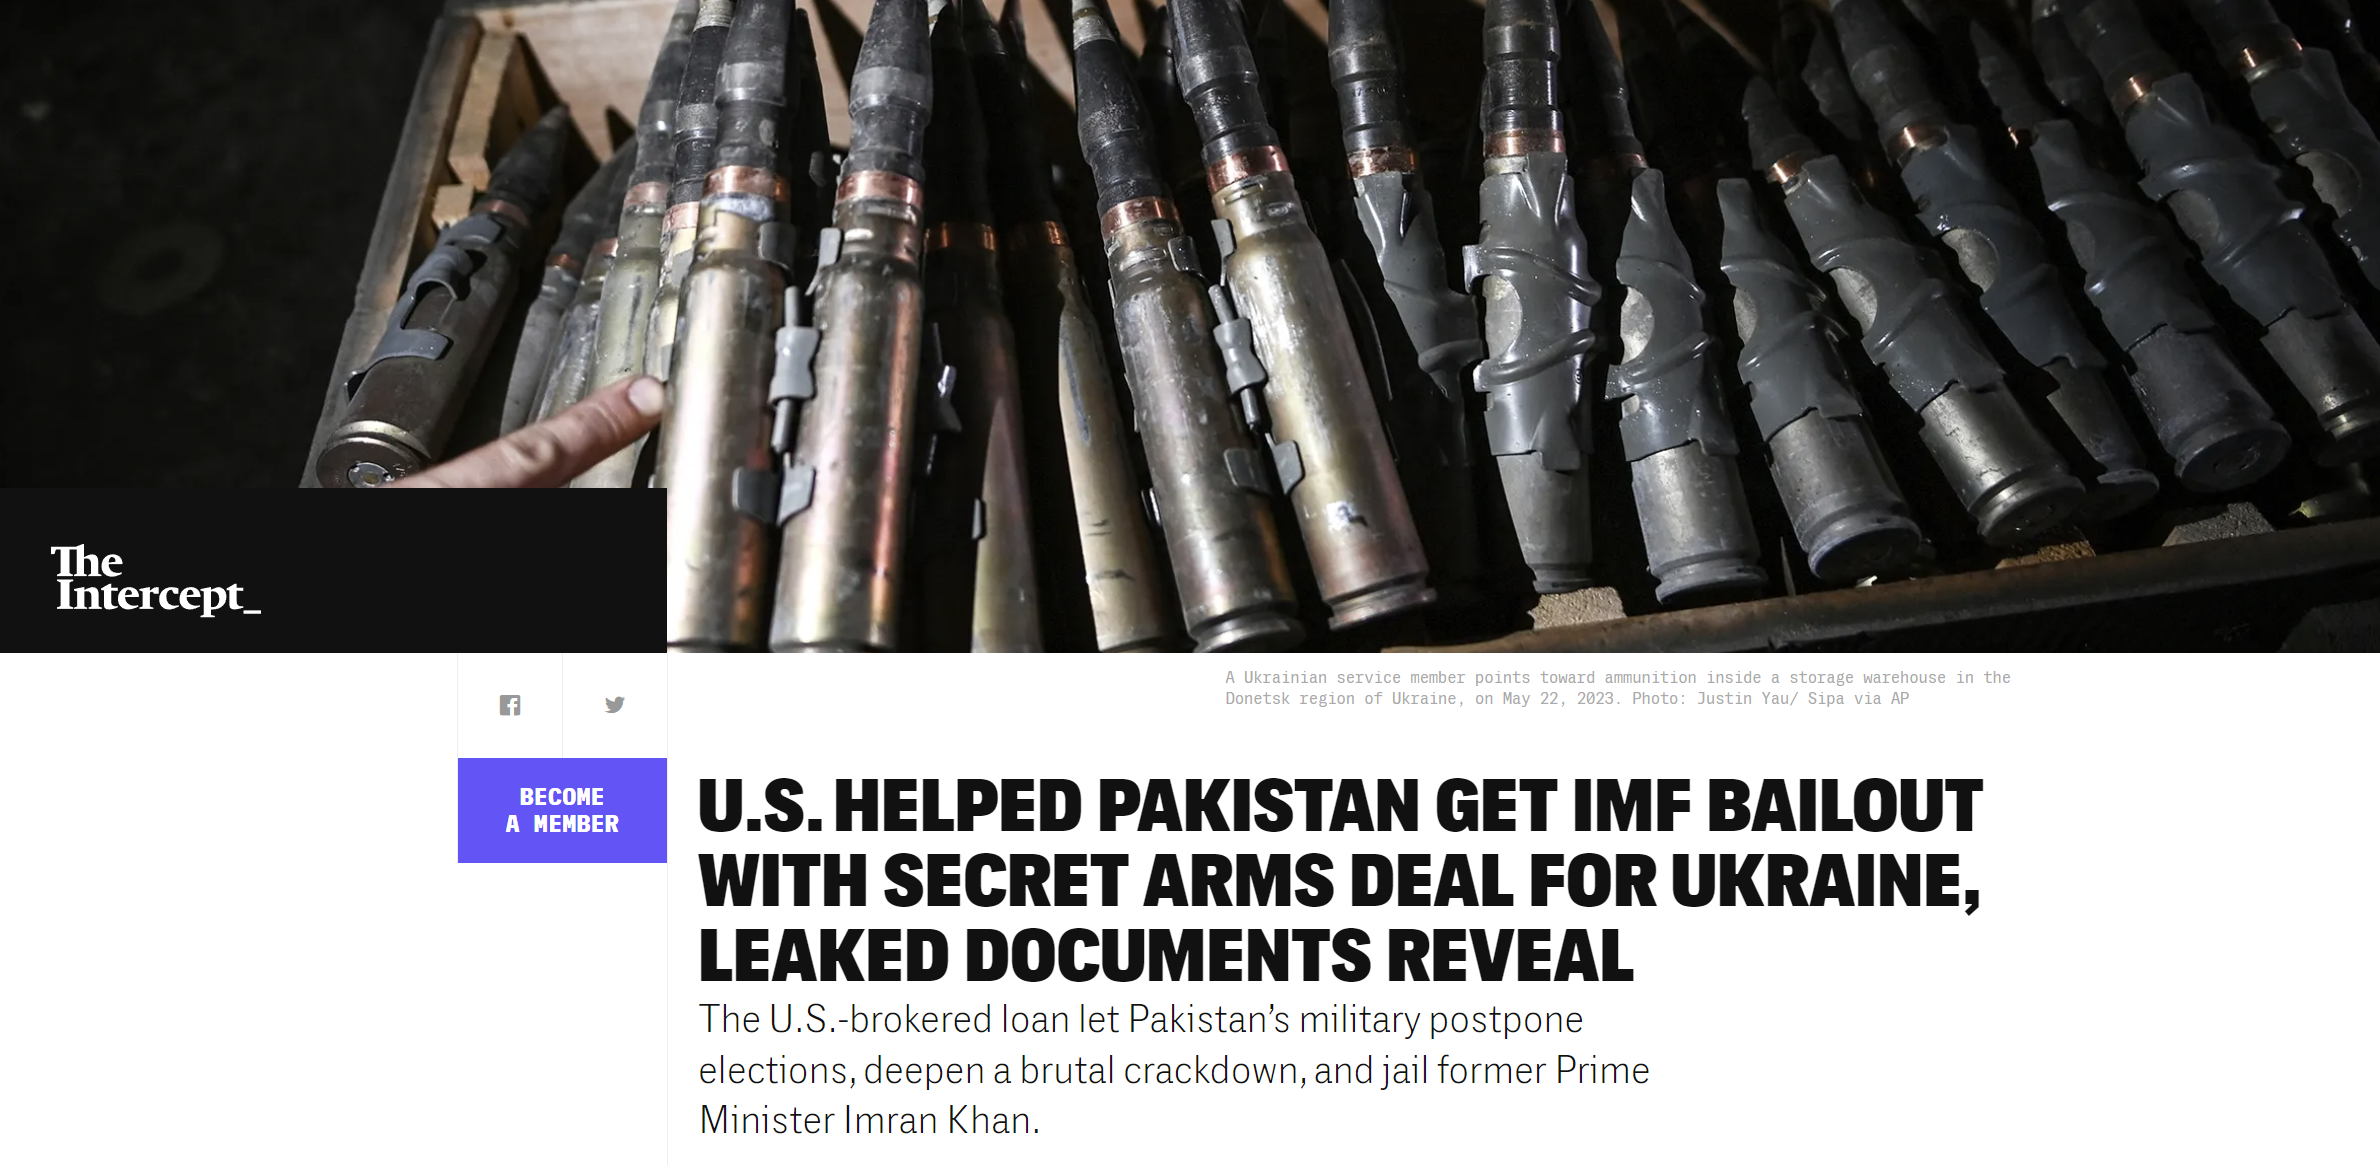 Αποκάλυψη! “Βόμβες αντί Σωτηρίας” – Οι ΗΠΑ “διέσωσαν” οικονομικά το Πακιστάν μεταφέροντας πακιστανικά όπλα στην Ουκρανία